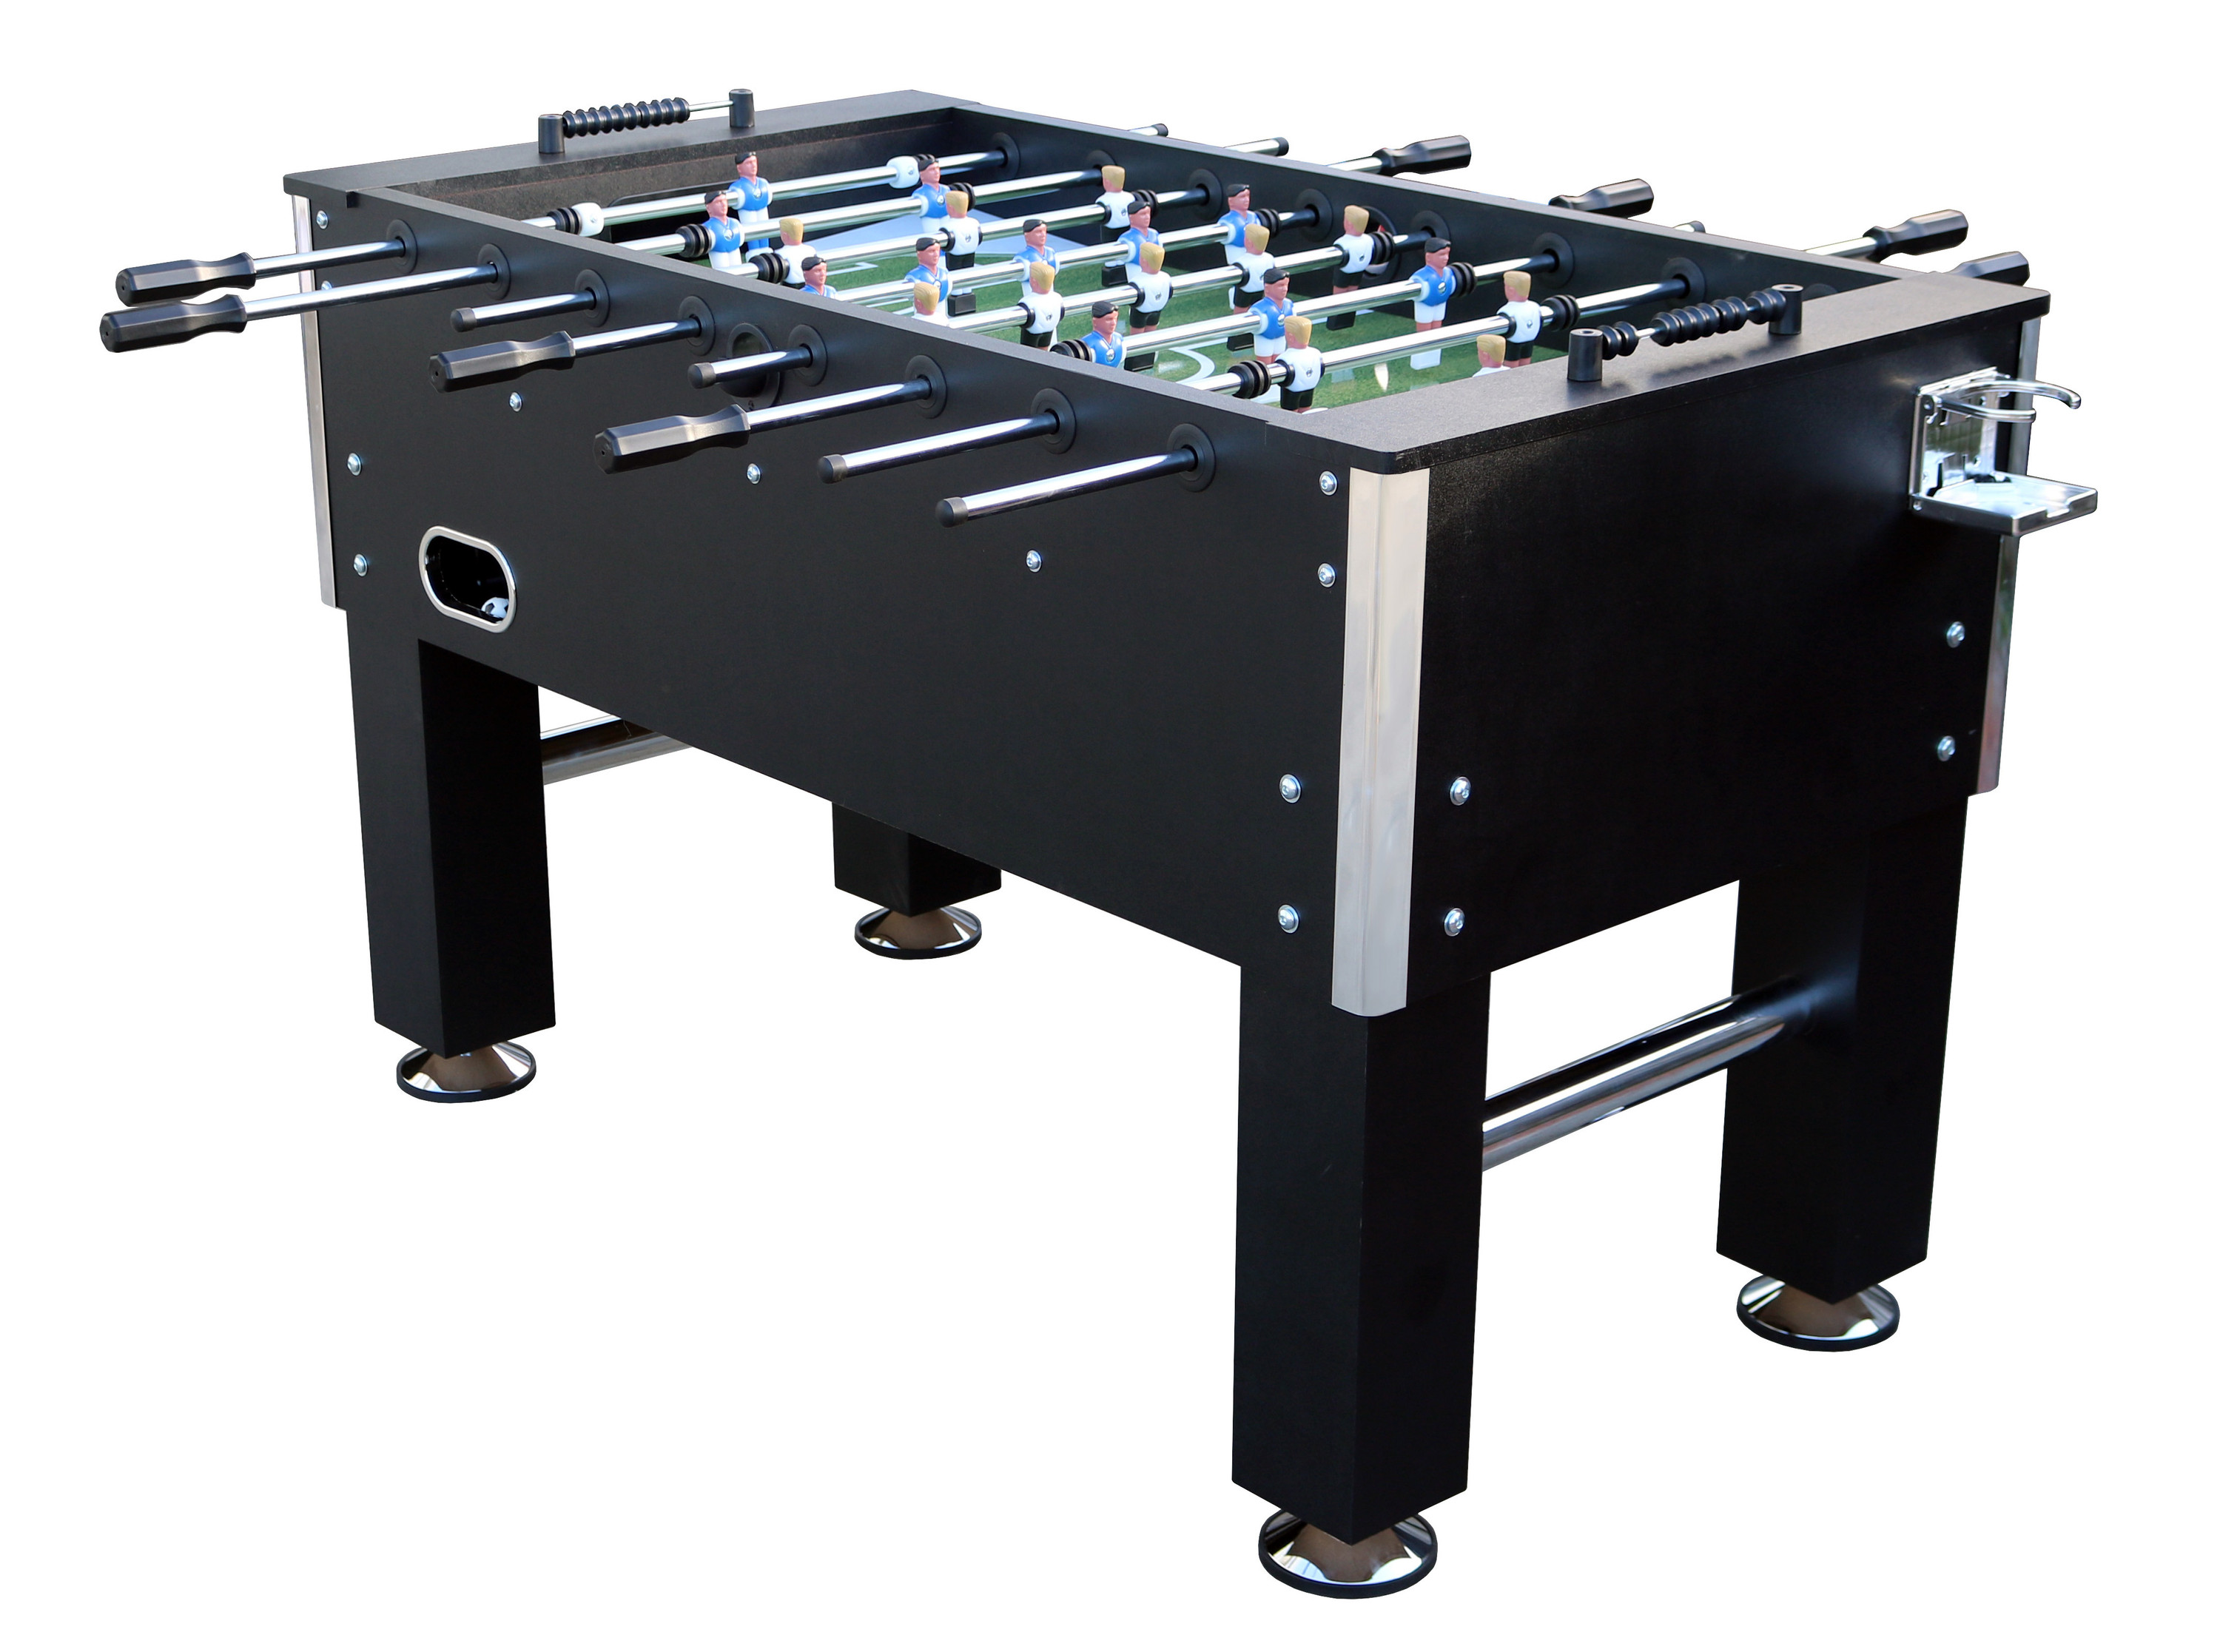 Kicker Table 5“ Profi Kickertisch Tischfußball schwarz verchromte Spielstangen 